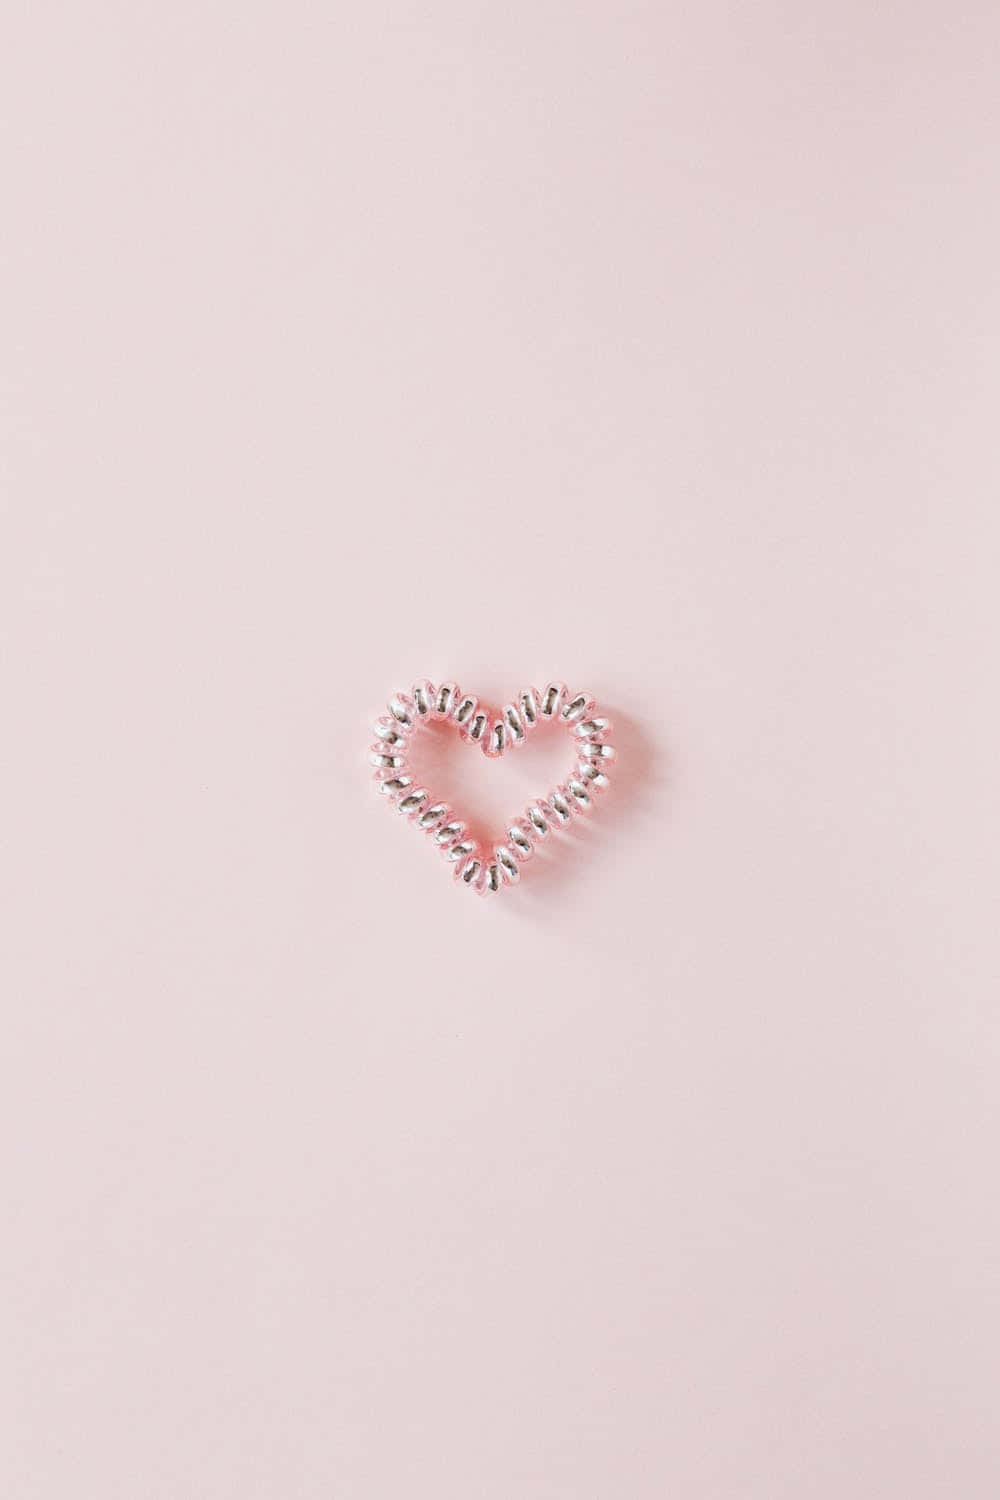 Eineherzförmige Haarspange Auf Einem Pinken Hintergrund Wallpaper